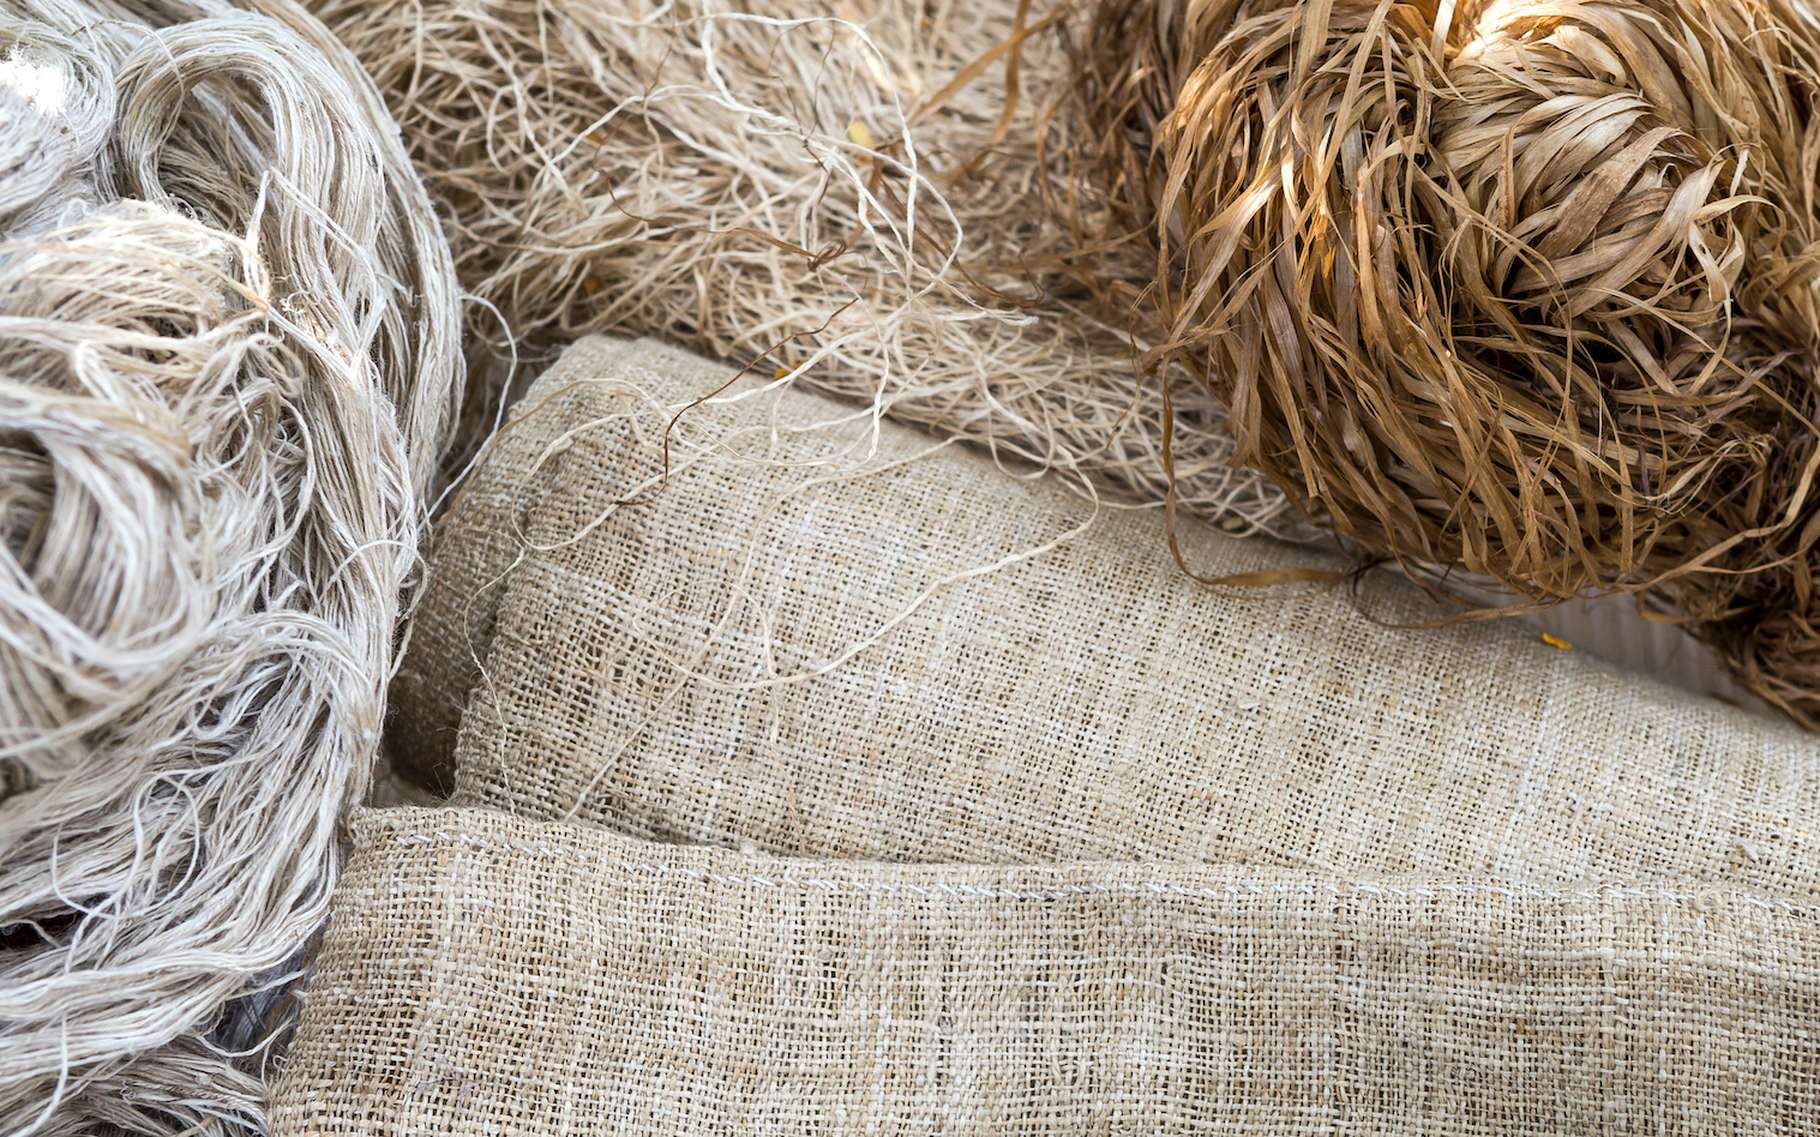 Les fibres végétales, comme le chanvre, peuvent constituer des alternatives intéressantes pour la fabrication de sacs. © sirirak, Adobe Stock